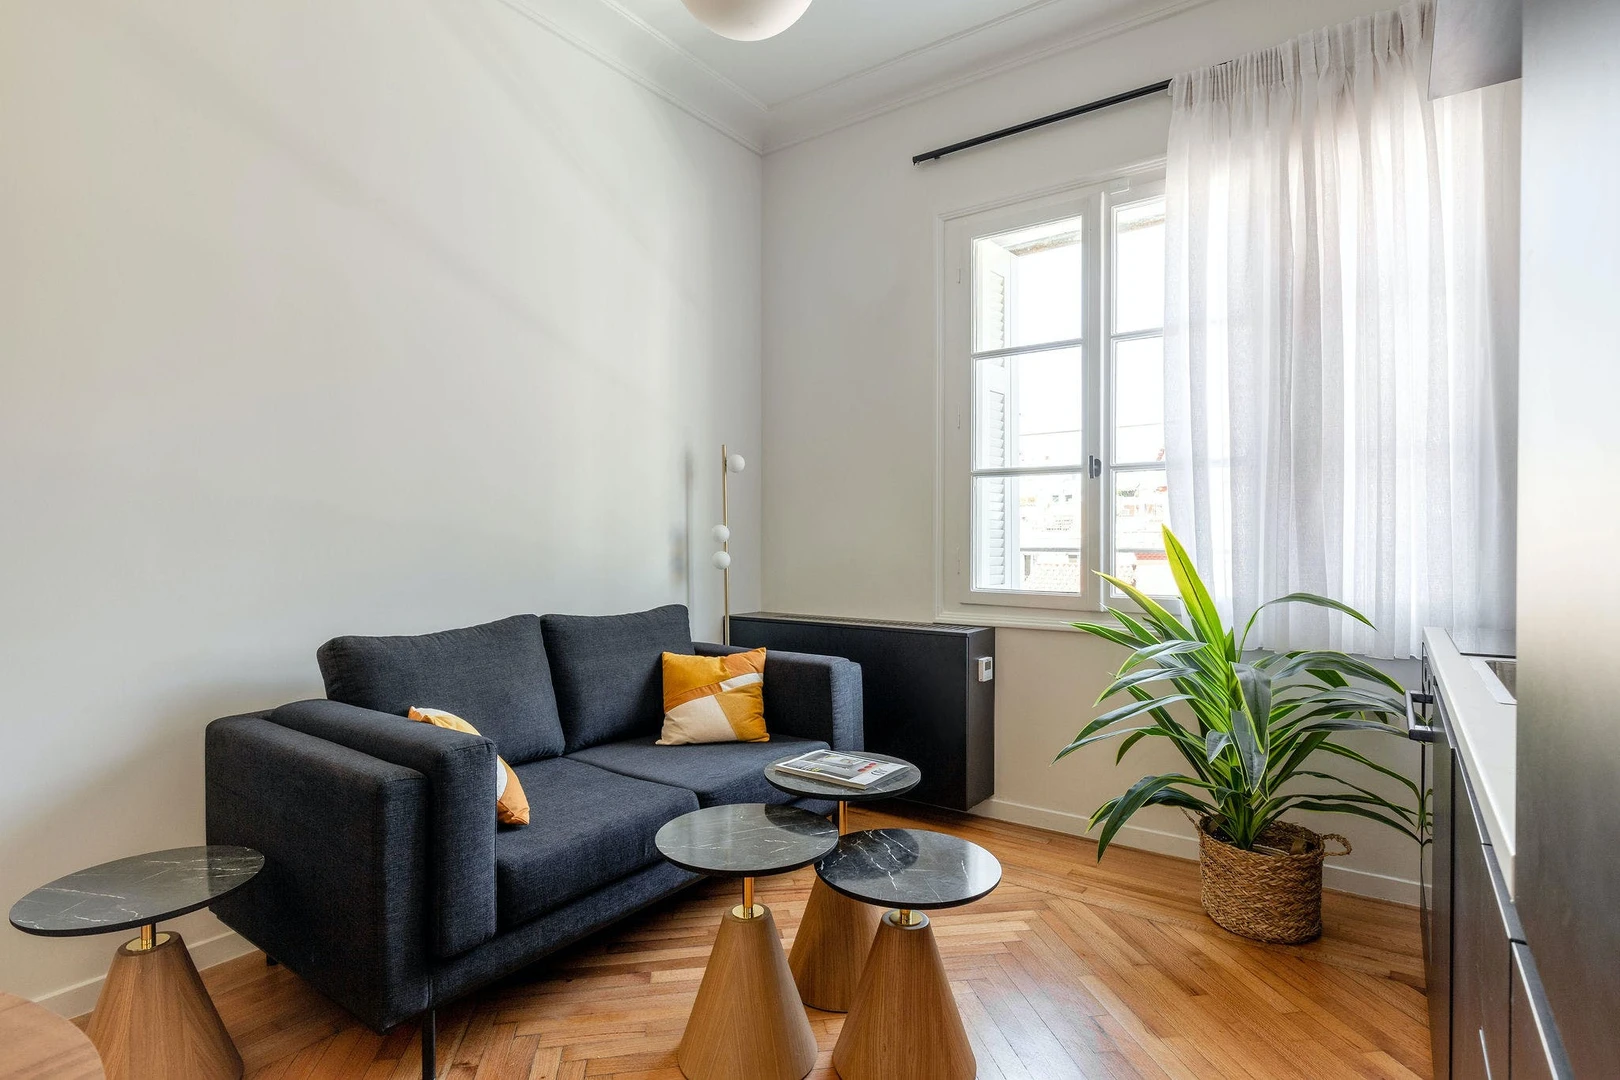 Apartamento moderno y luminoso en athens